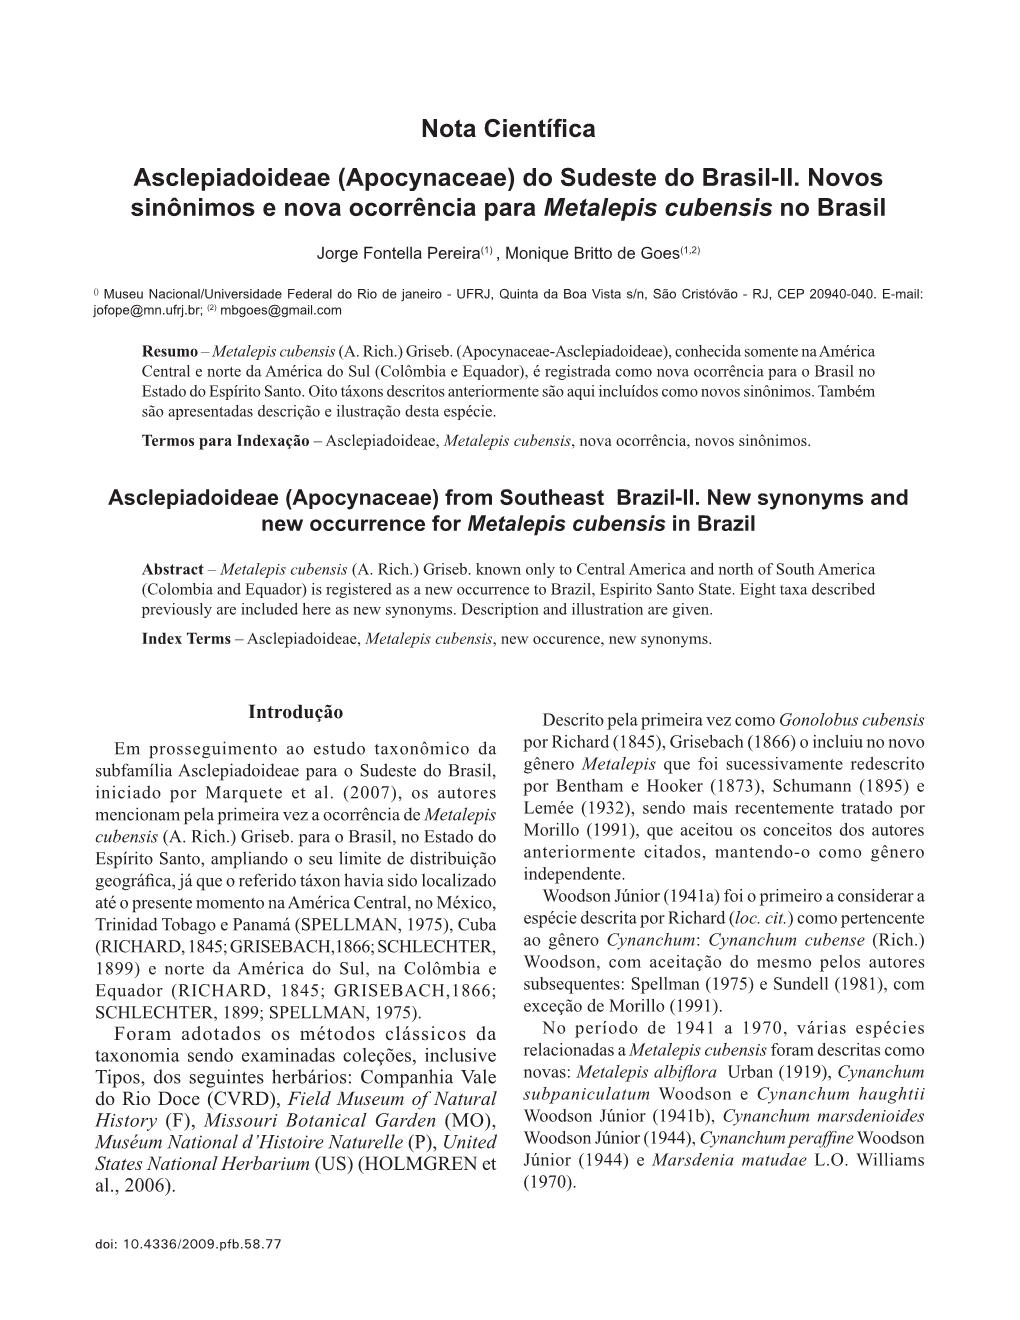 Nota Científica Asclepiadoideae (Apocynaceae) Do Sudeste Do Brasil-II. Novos Sinônimos E Nova Ocorrência Para Metalepis Cubensis No Brasil